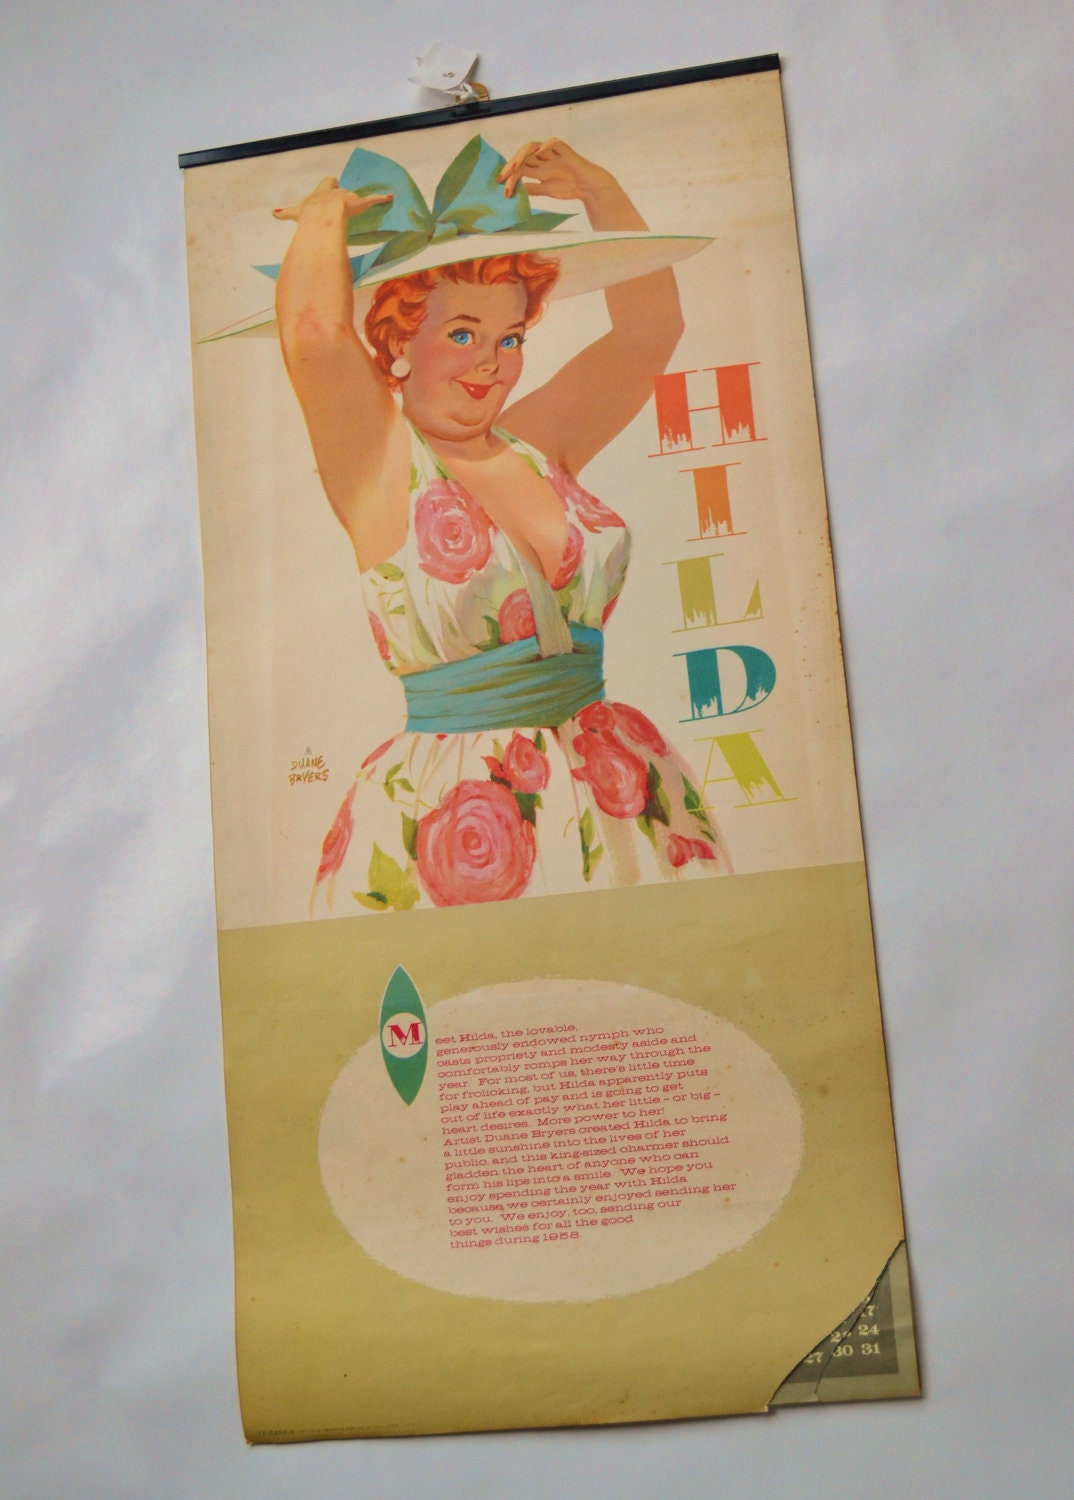 1958 Hilda buxom Pin Up Calendar by Duane Bryers by Weirdsville